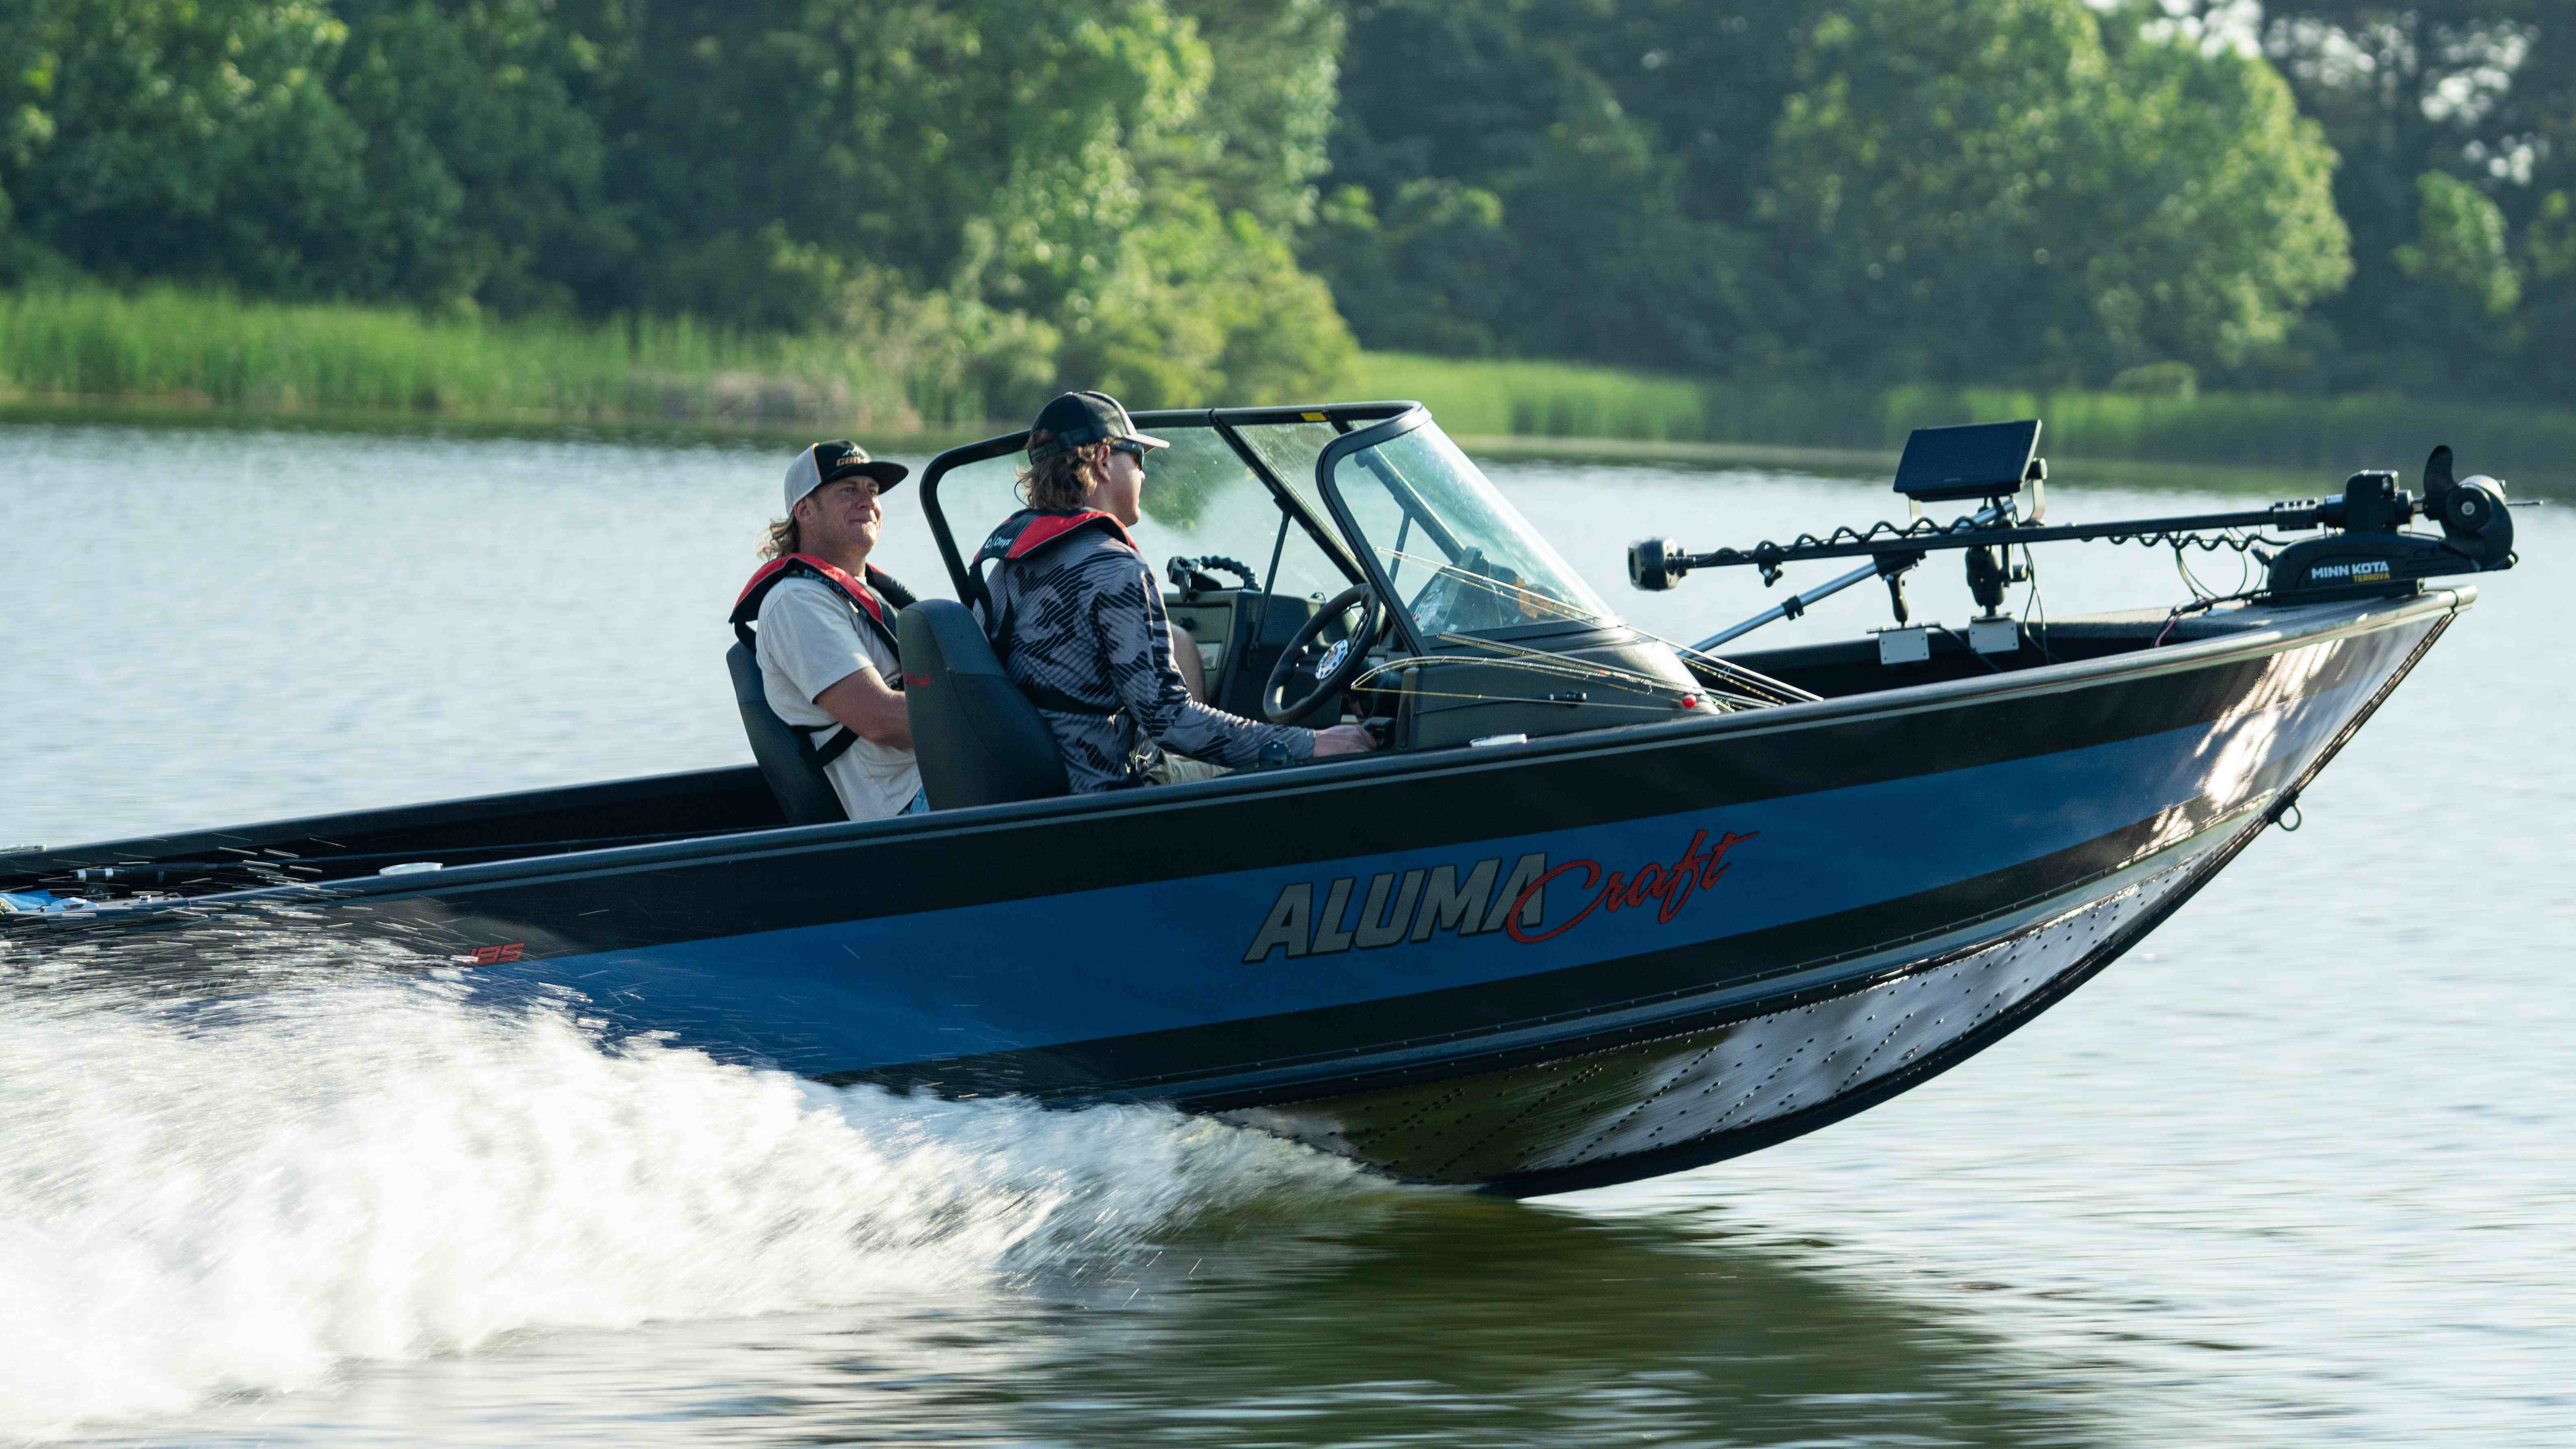 Jay Siemens et Dustin Jones conduisant un bateau Alumacraft en eau libre